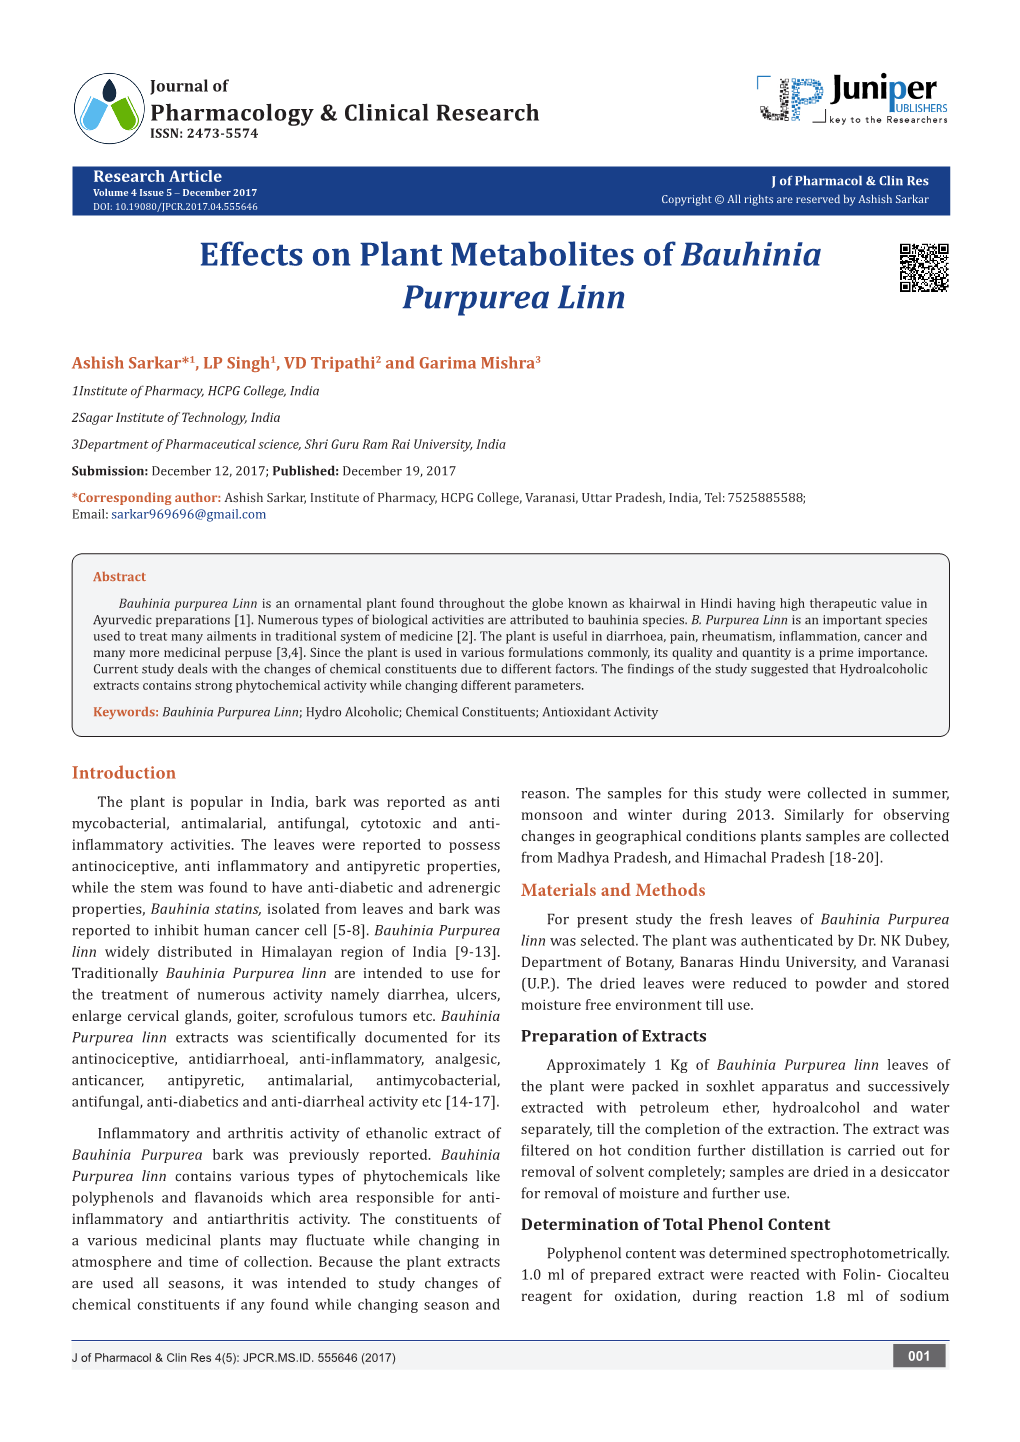 Effects on Plant Metabolites of Bauhinia Purpurea Linn